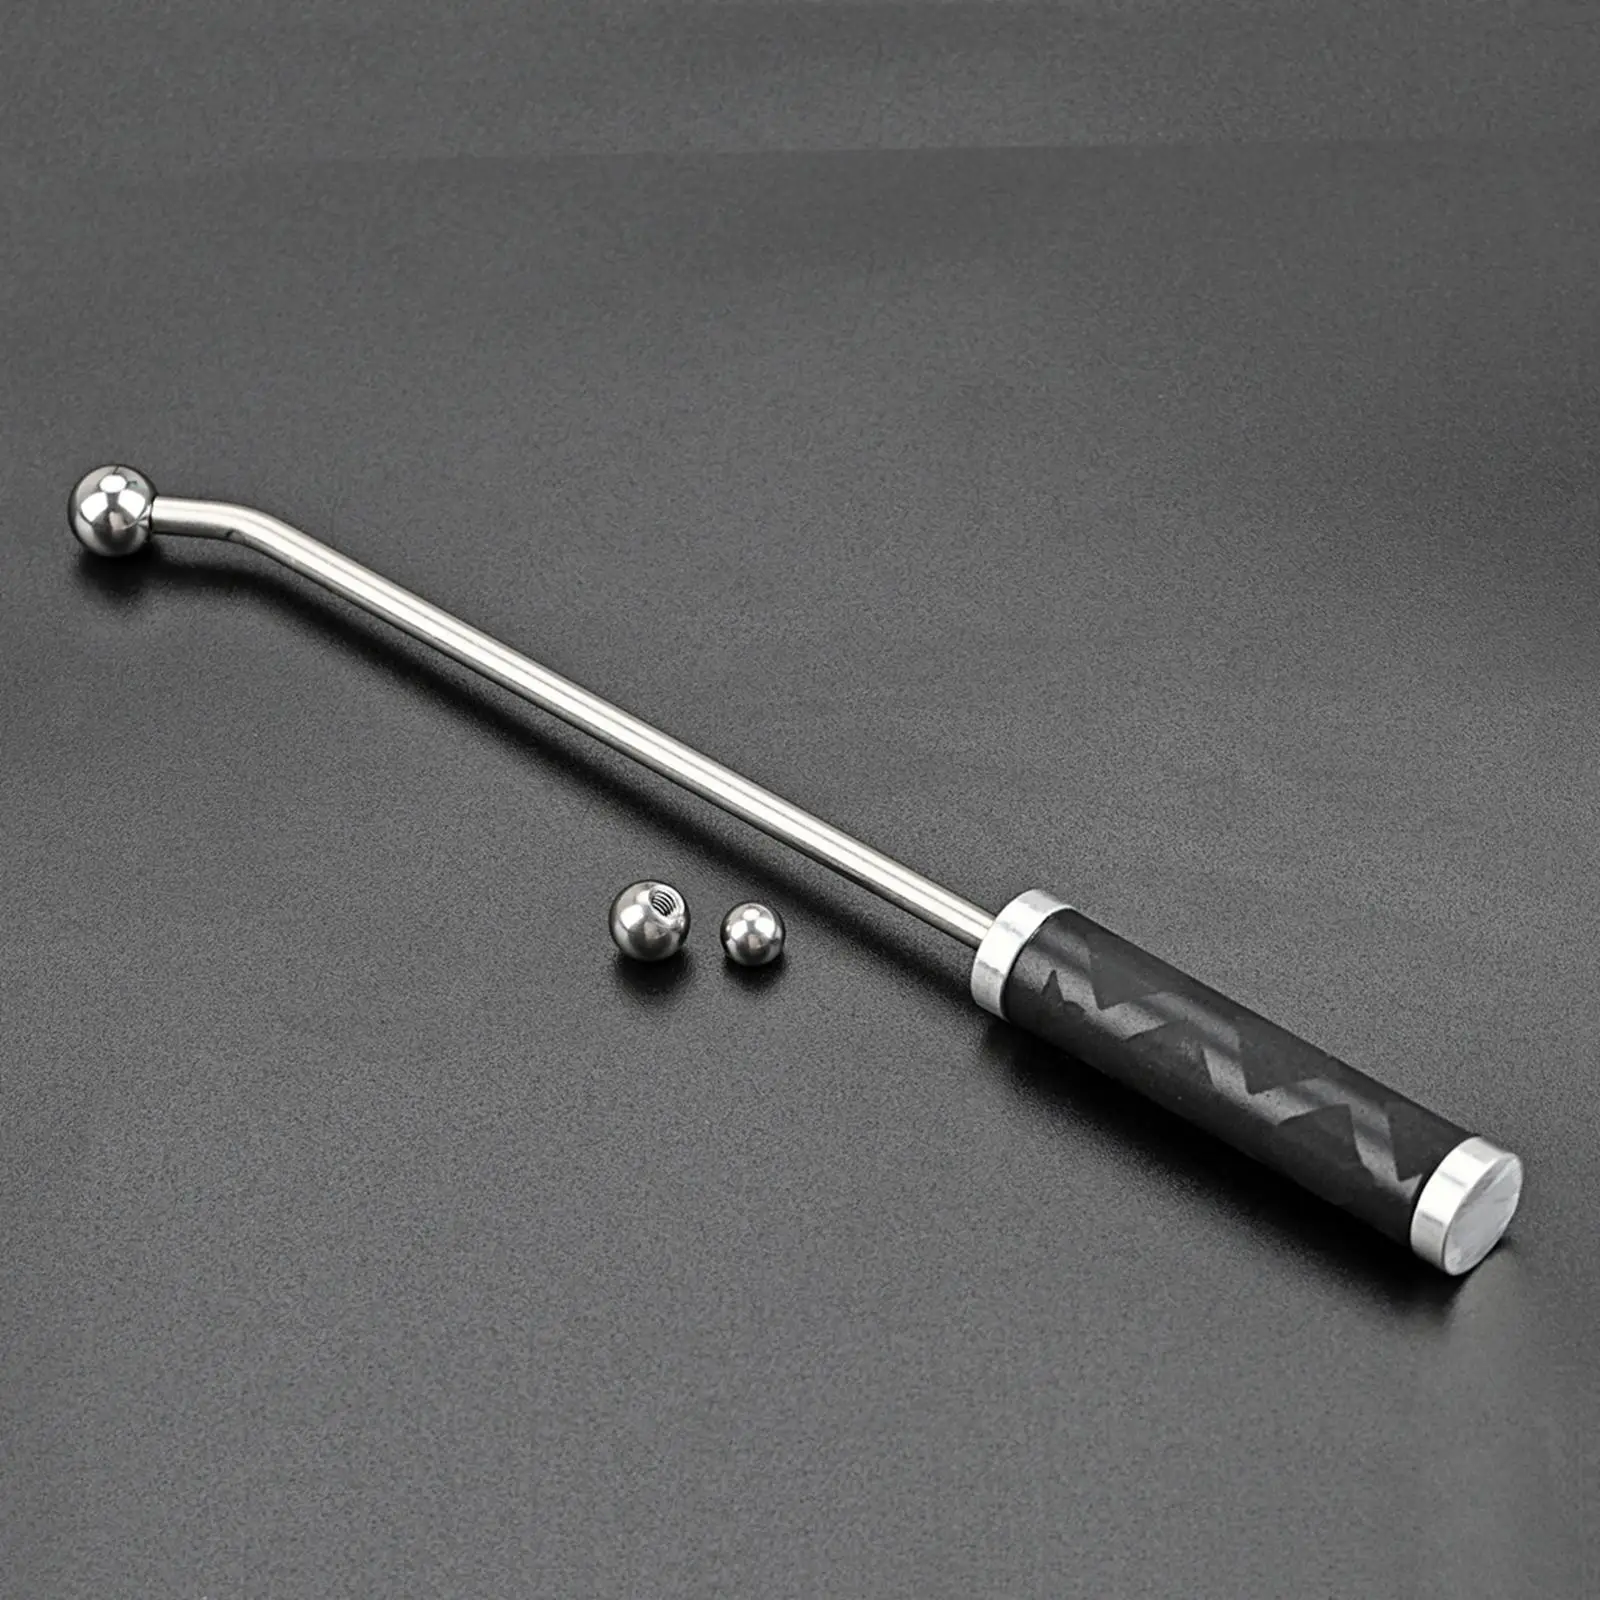 Saxophone Dent Repair Tool Dent Repair Ball Neck Repairing Maintenance Set for Long Rod